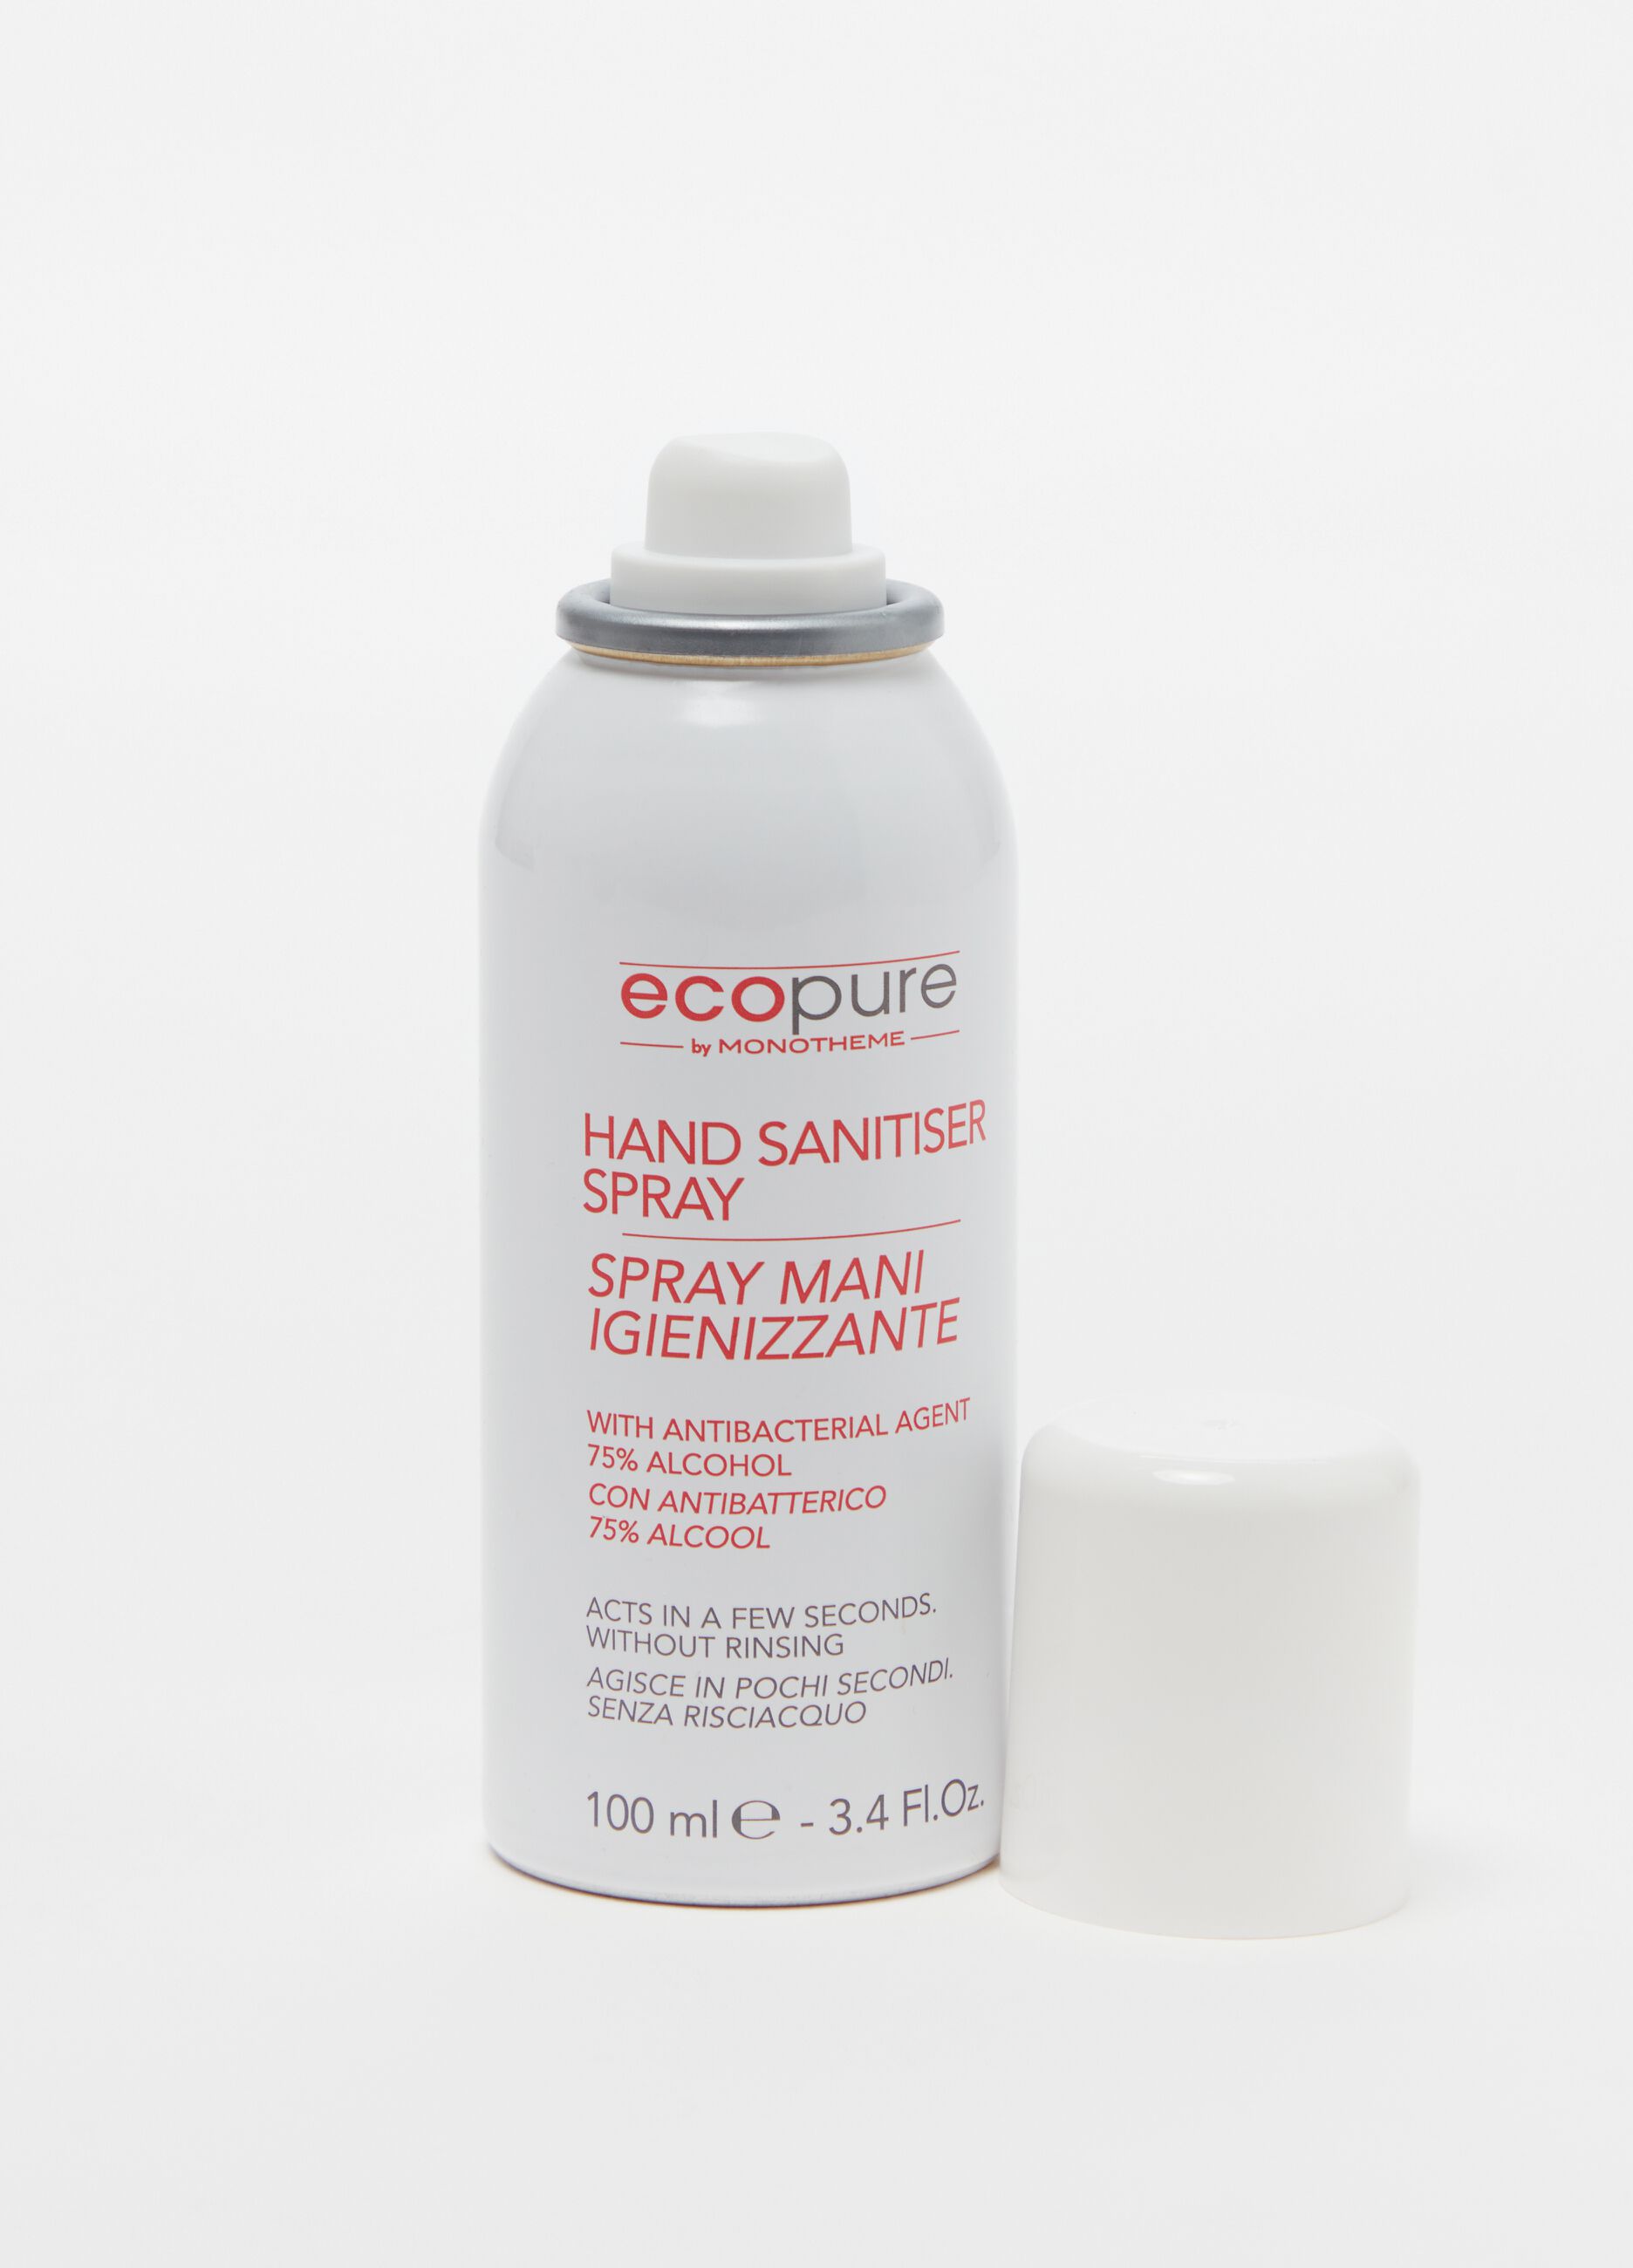 Hand sanitiser spray 100ml